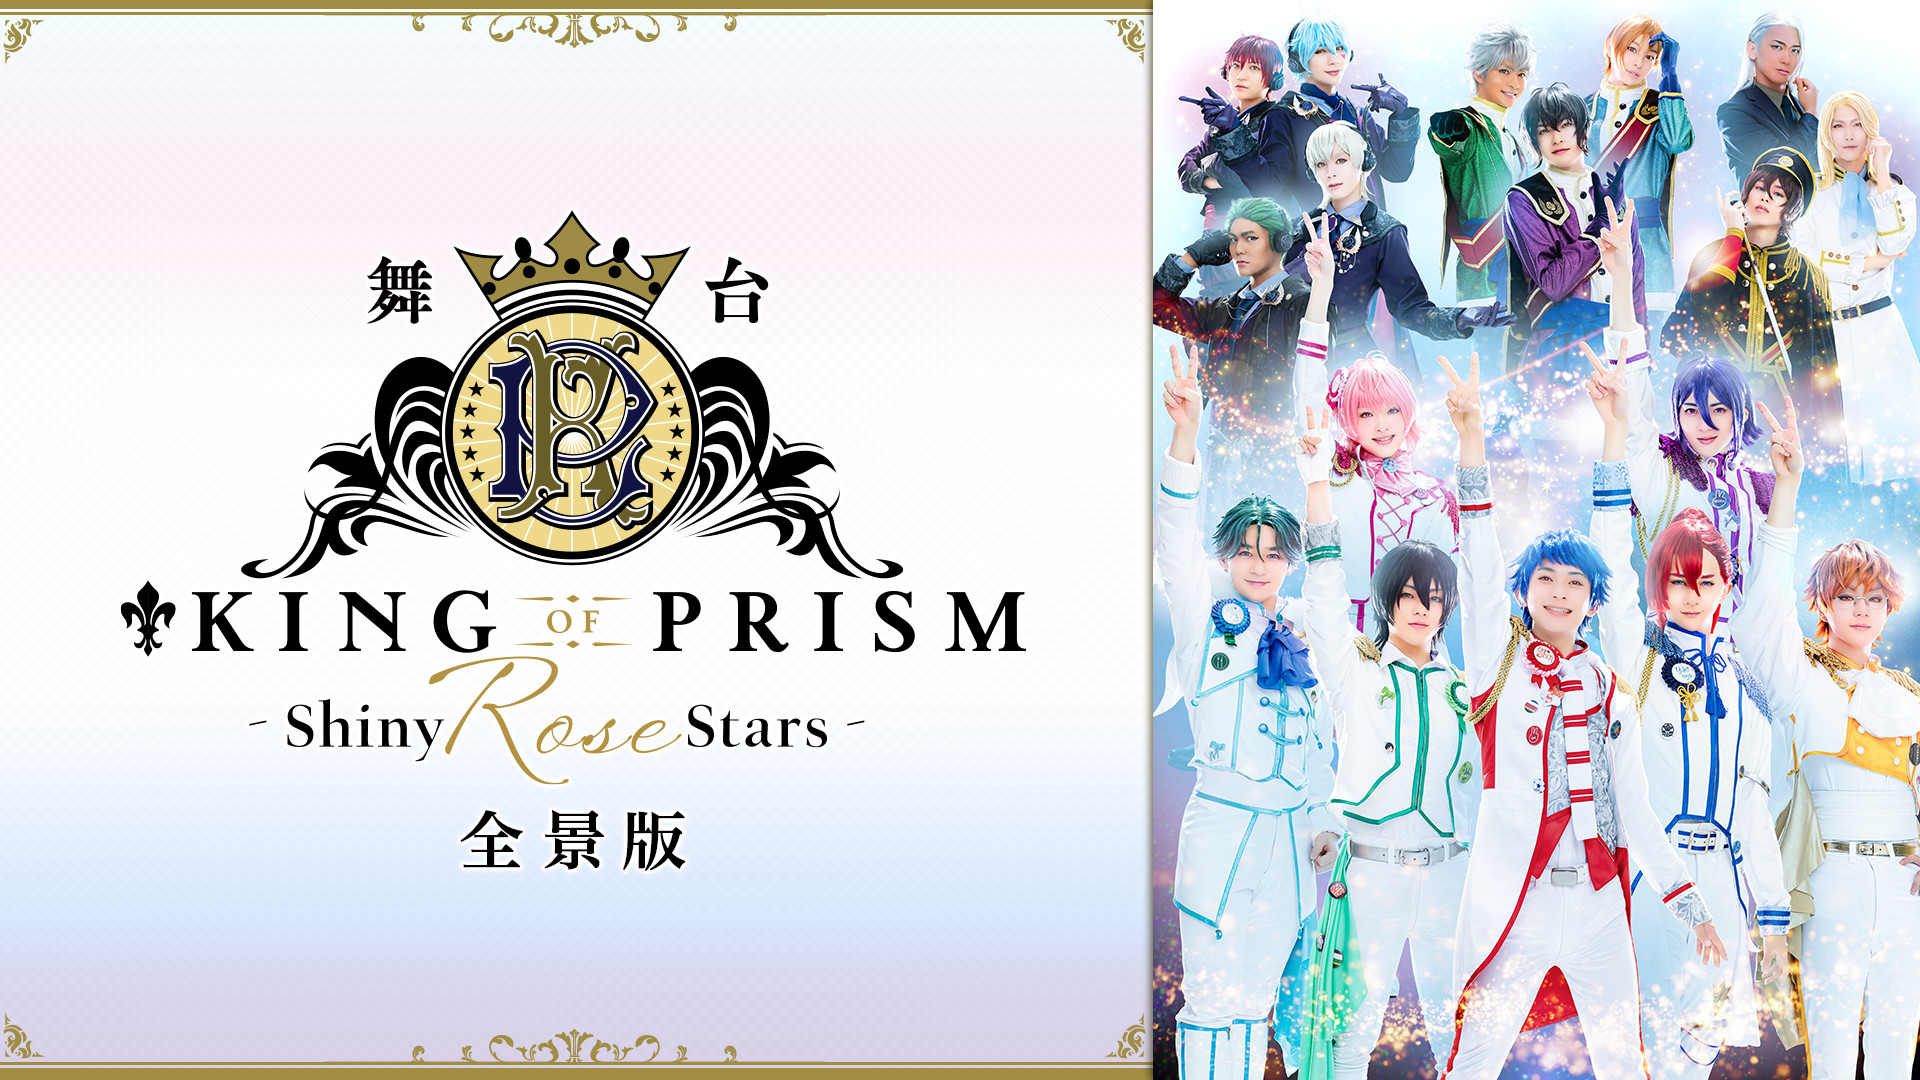 舞台「KING OF PRISM -Shiny Rose Stars-」全景版 | アニメ動画見放題